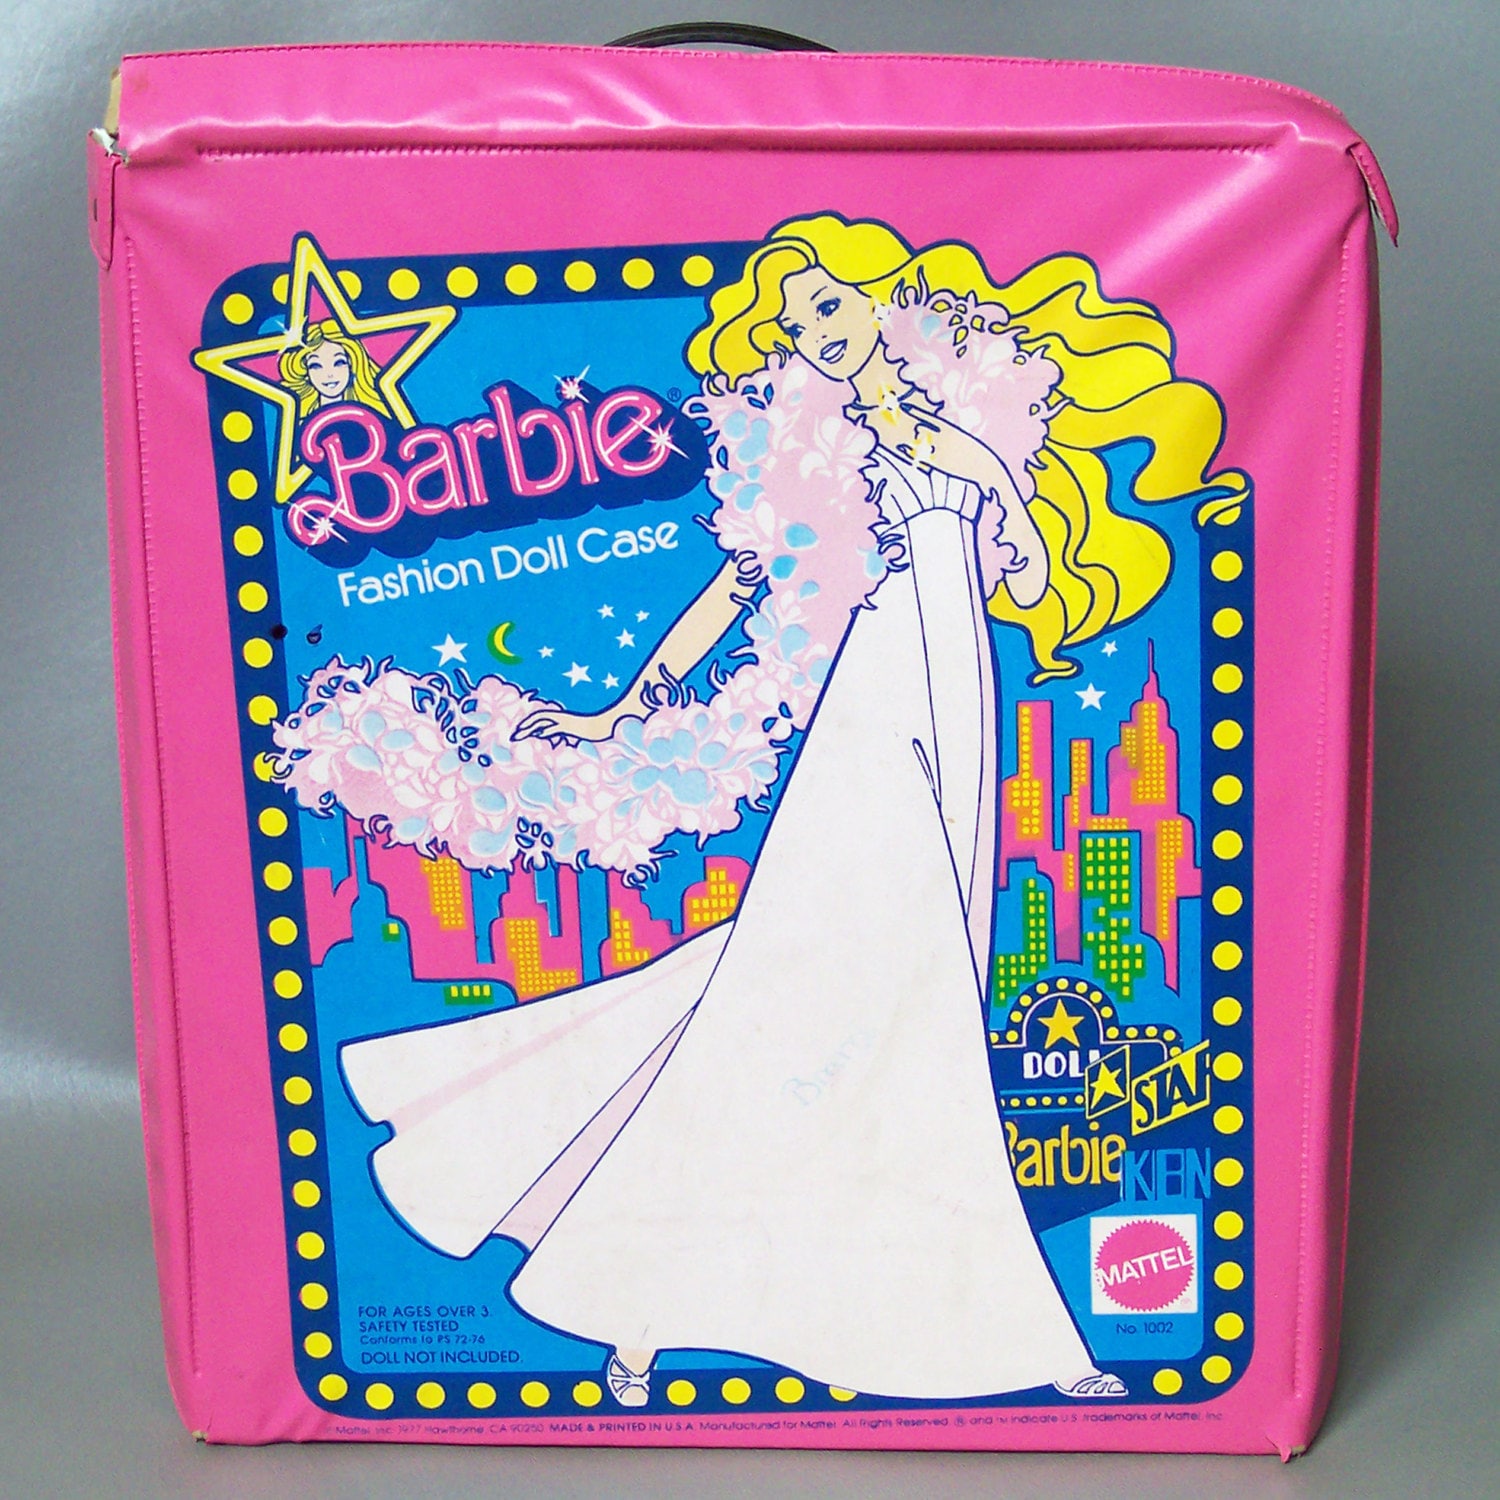 Vintage 1977 Barbie Doll Case